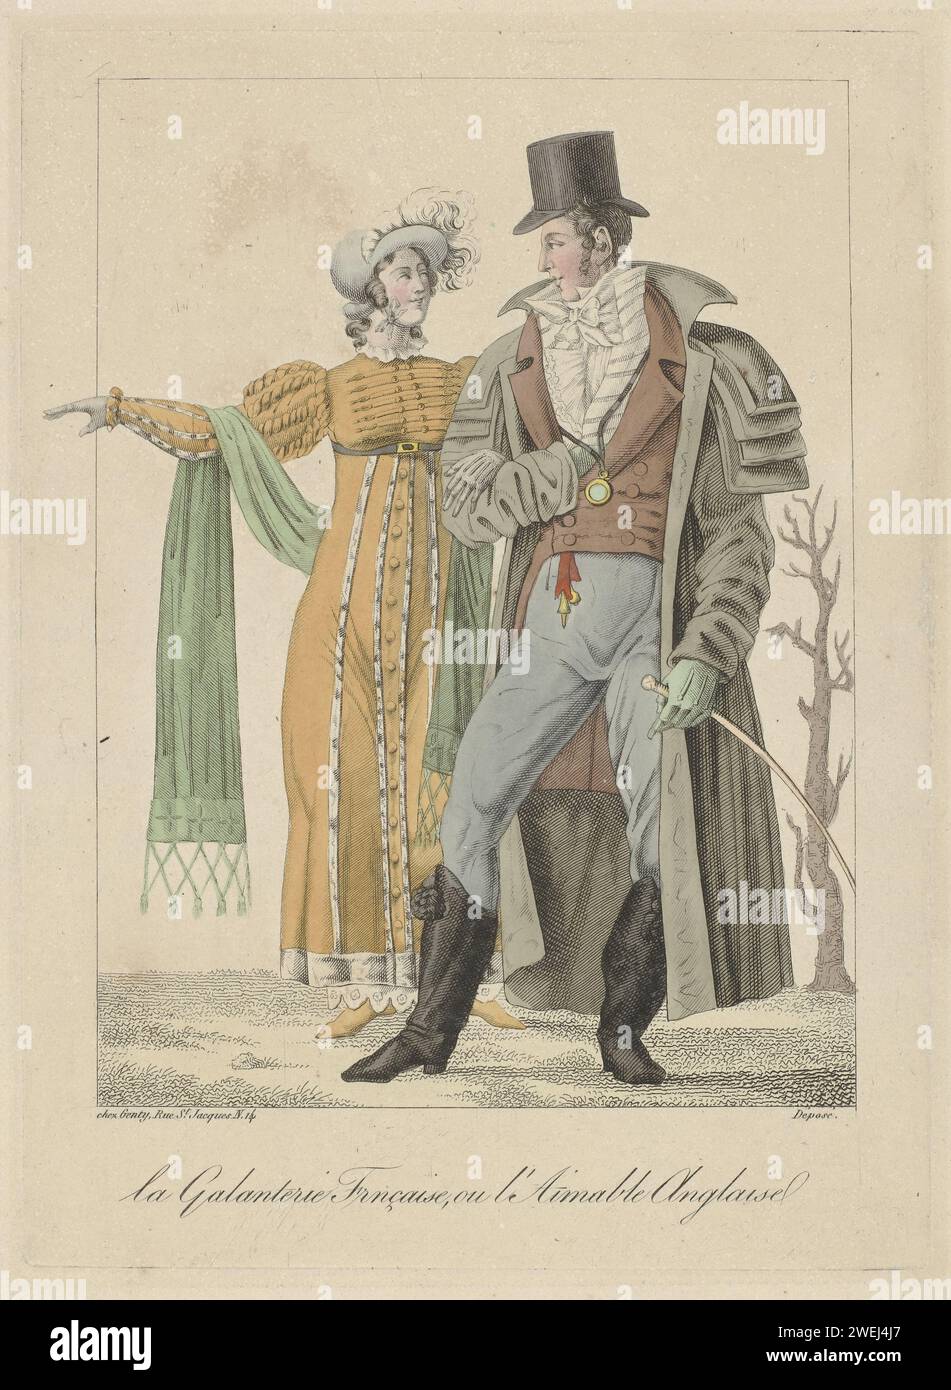 Galanterie française, ou charme anglais, c. 1810 - c. 1812 Un homme et une femme sont armés. Elle porte une robe de haut niveau avec taille relevée et manches longues. Accessoires : chapeau avec plumes et poutres, écharpe avec franges, ceintures, chaussures avec nez pointu aux extrémités. Il est vêtu d'un pardessus (Carrick) avec quatre cols d'épaule, freak avec deux rangées de nœuds, gilet rayé et pantalon long. Cravate et chemise avec Jabot froissé. Accessoires : chapeau haut de gamme, monocle sur cordon, gants, breloque, fouet, bottes avec brosses et talons. gravure sur papier / gravure de plaques de mode. casque : chapeau (+ vêtements pour femmes). d Banque D'Images